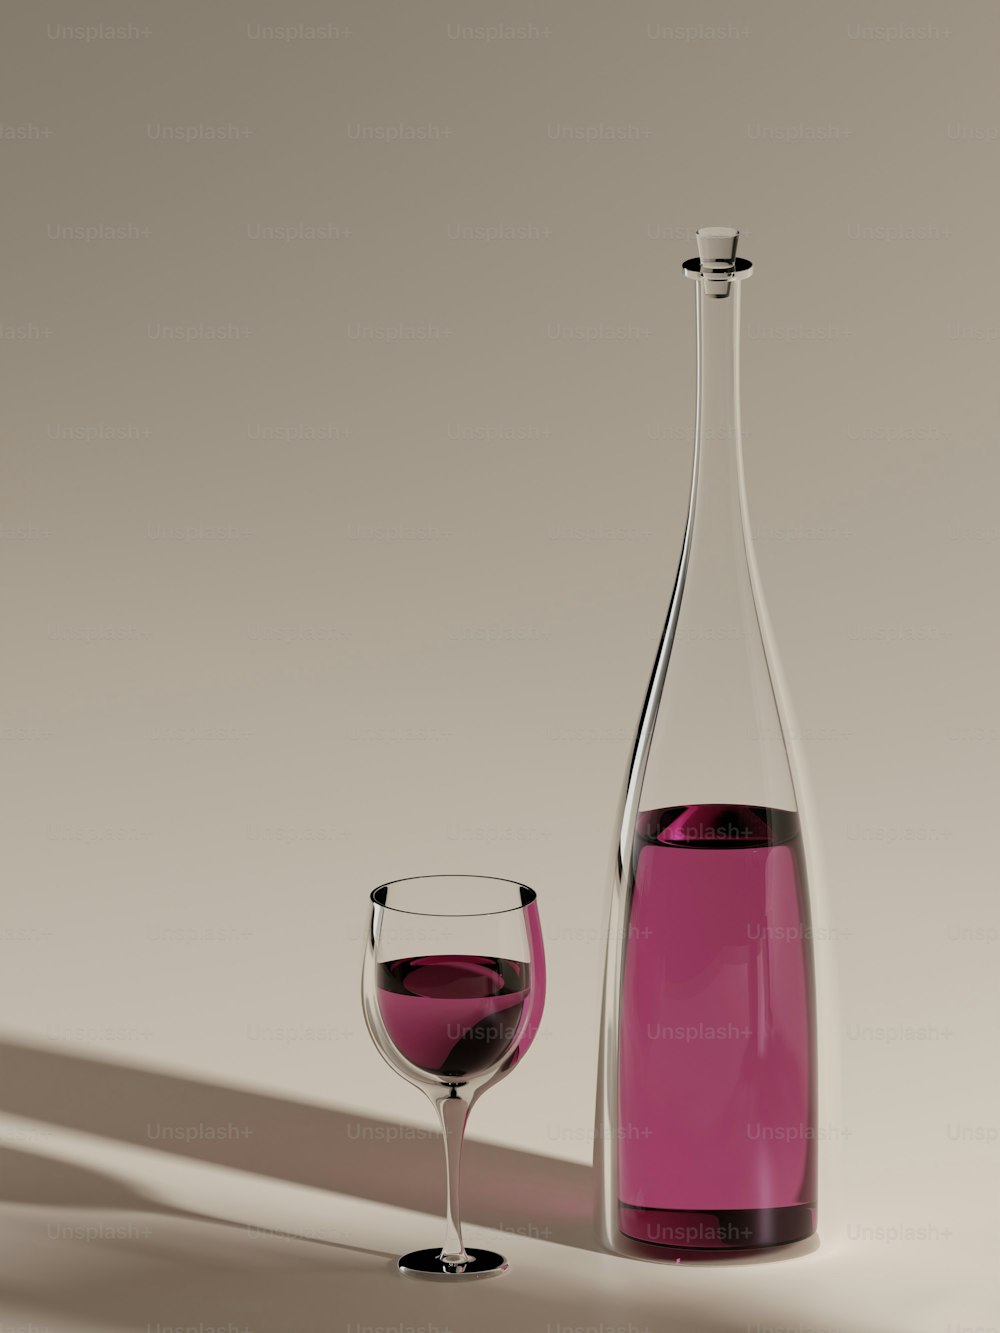 uma garrafa de vinho e um copo de vinho